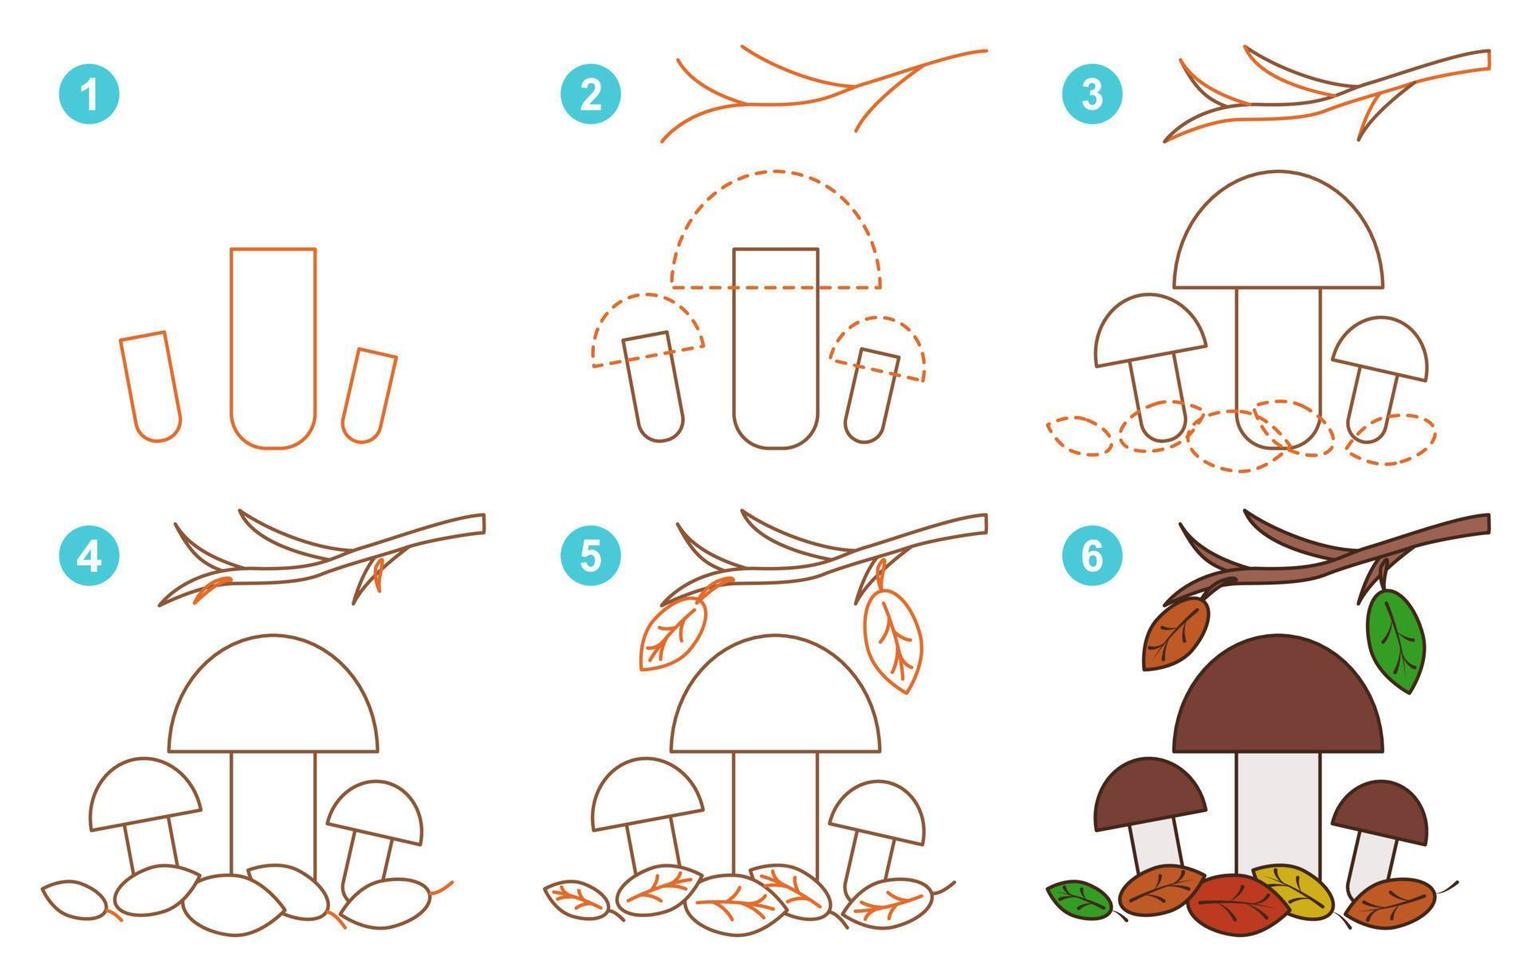 instructions pour dessiner des cèpes mignons. suivre étape par cèpes. feuille de travail pour enfant apprenant à dessiner des champignons. jeu pour la page de vecteur enfant. schéma pour dessiner des cèpes.